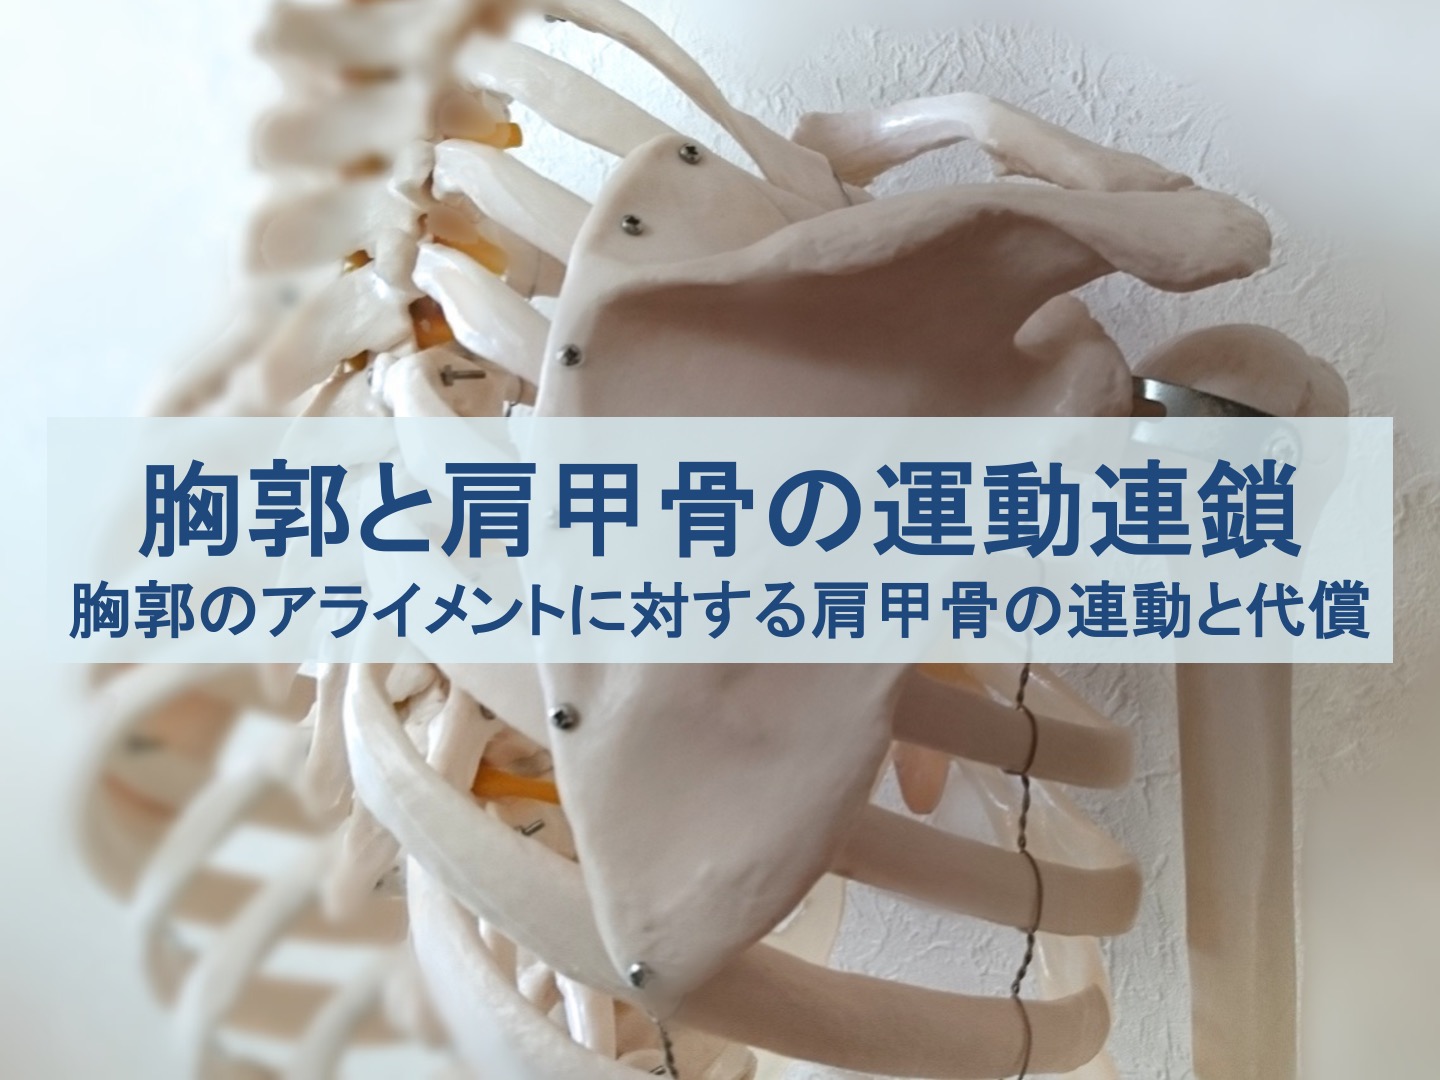 胸郭と肩甲骨の運動連鎖のトップ画像